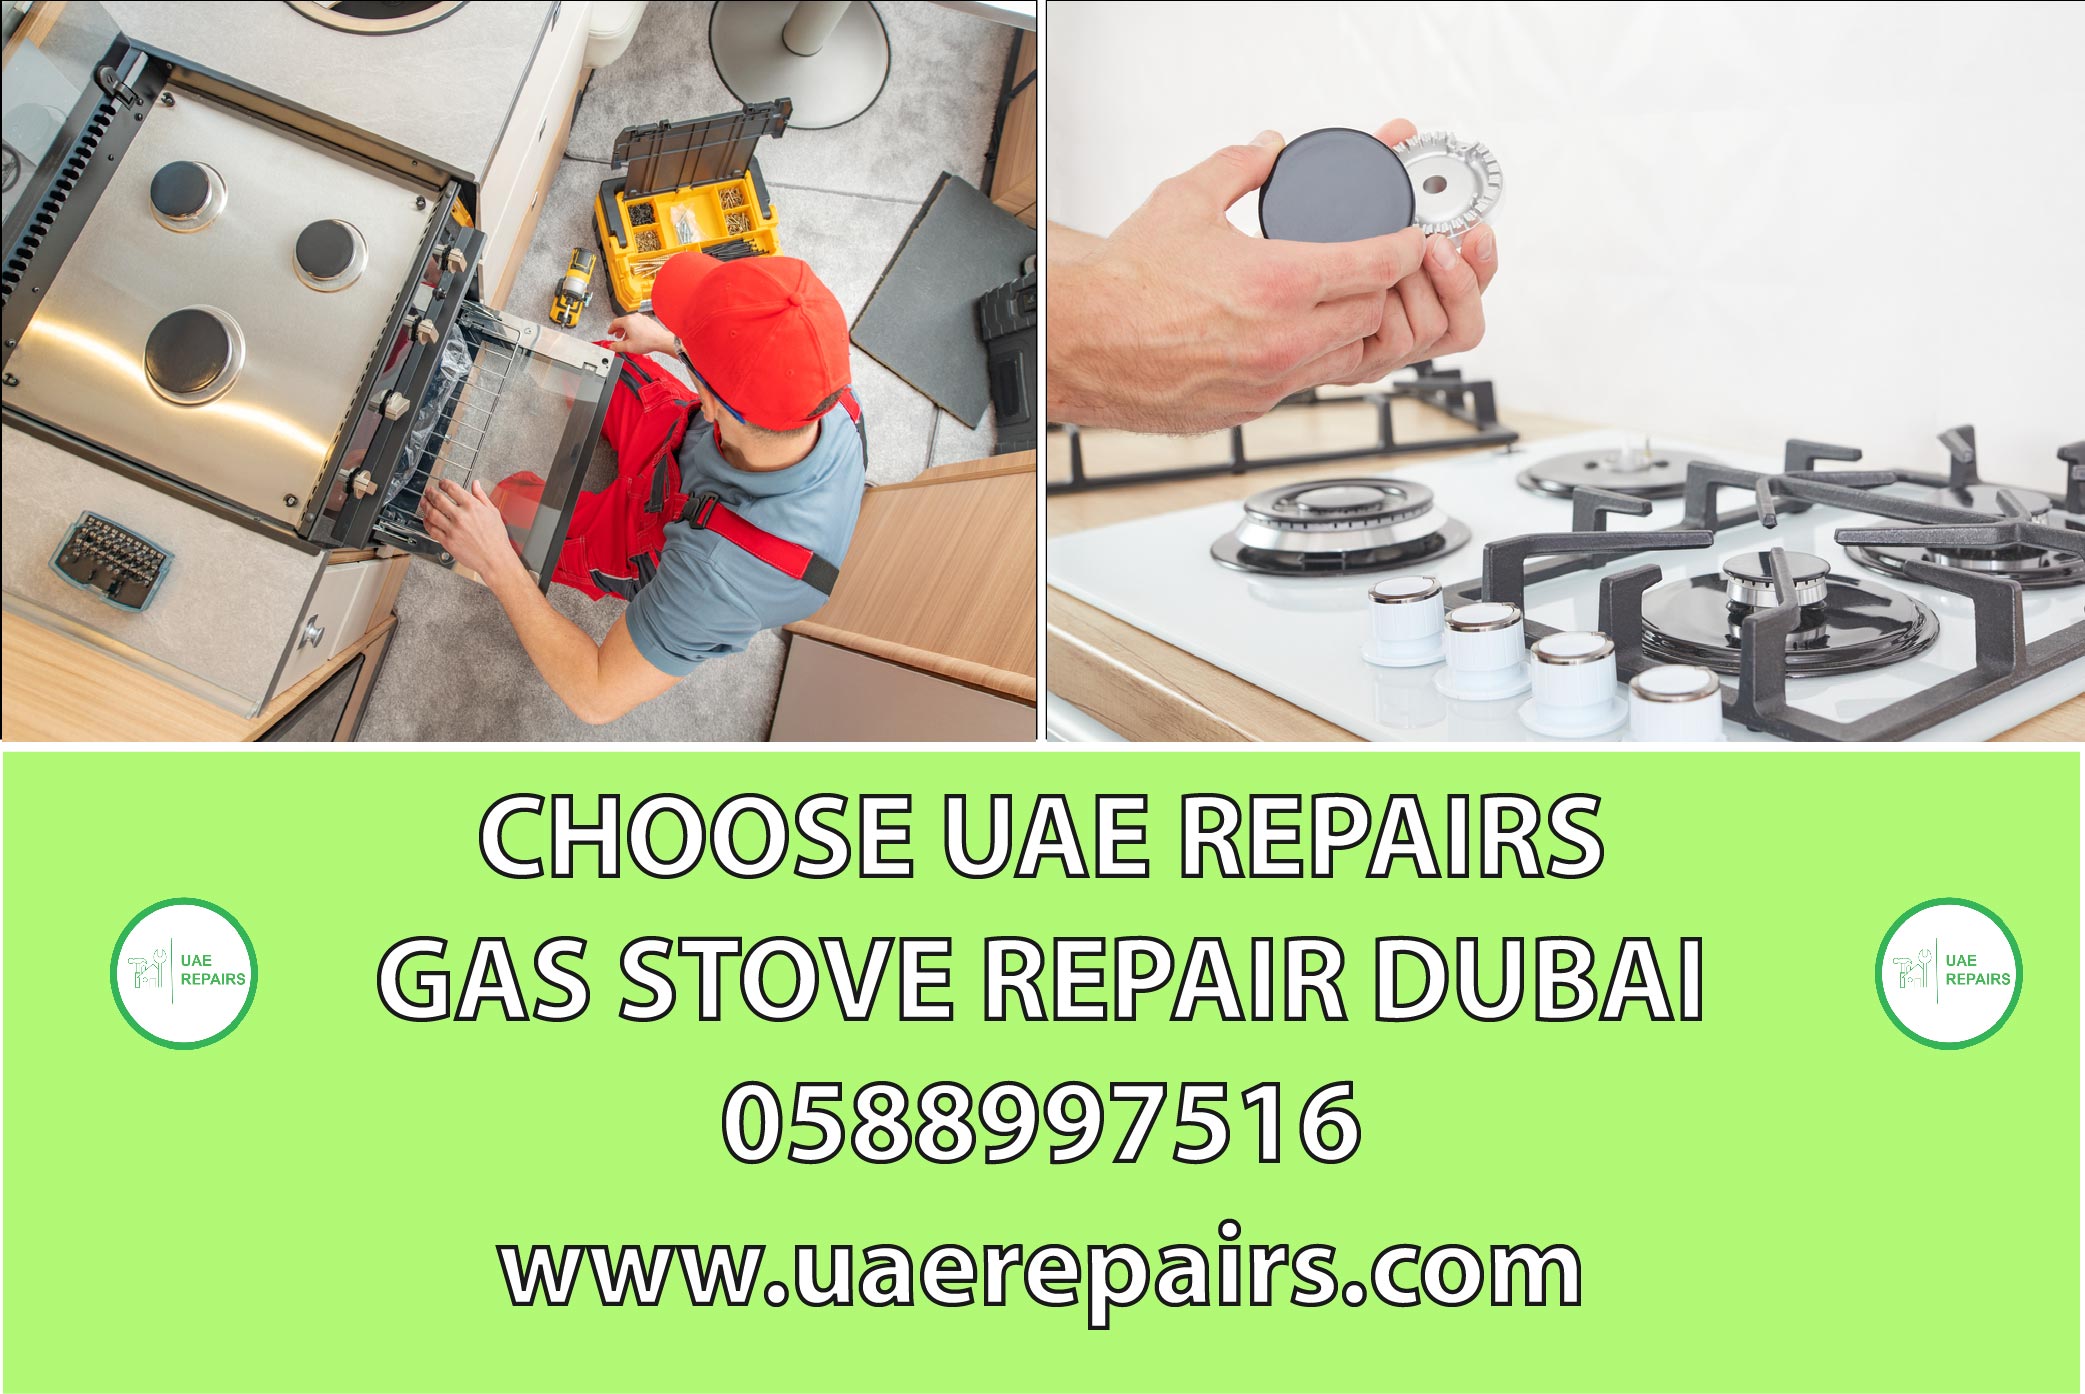 CHOOSE UAE REPAIRS FOR GAS STOVE REPAIR DUBAI CONTACT US 0588997516